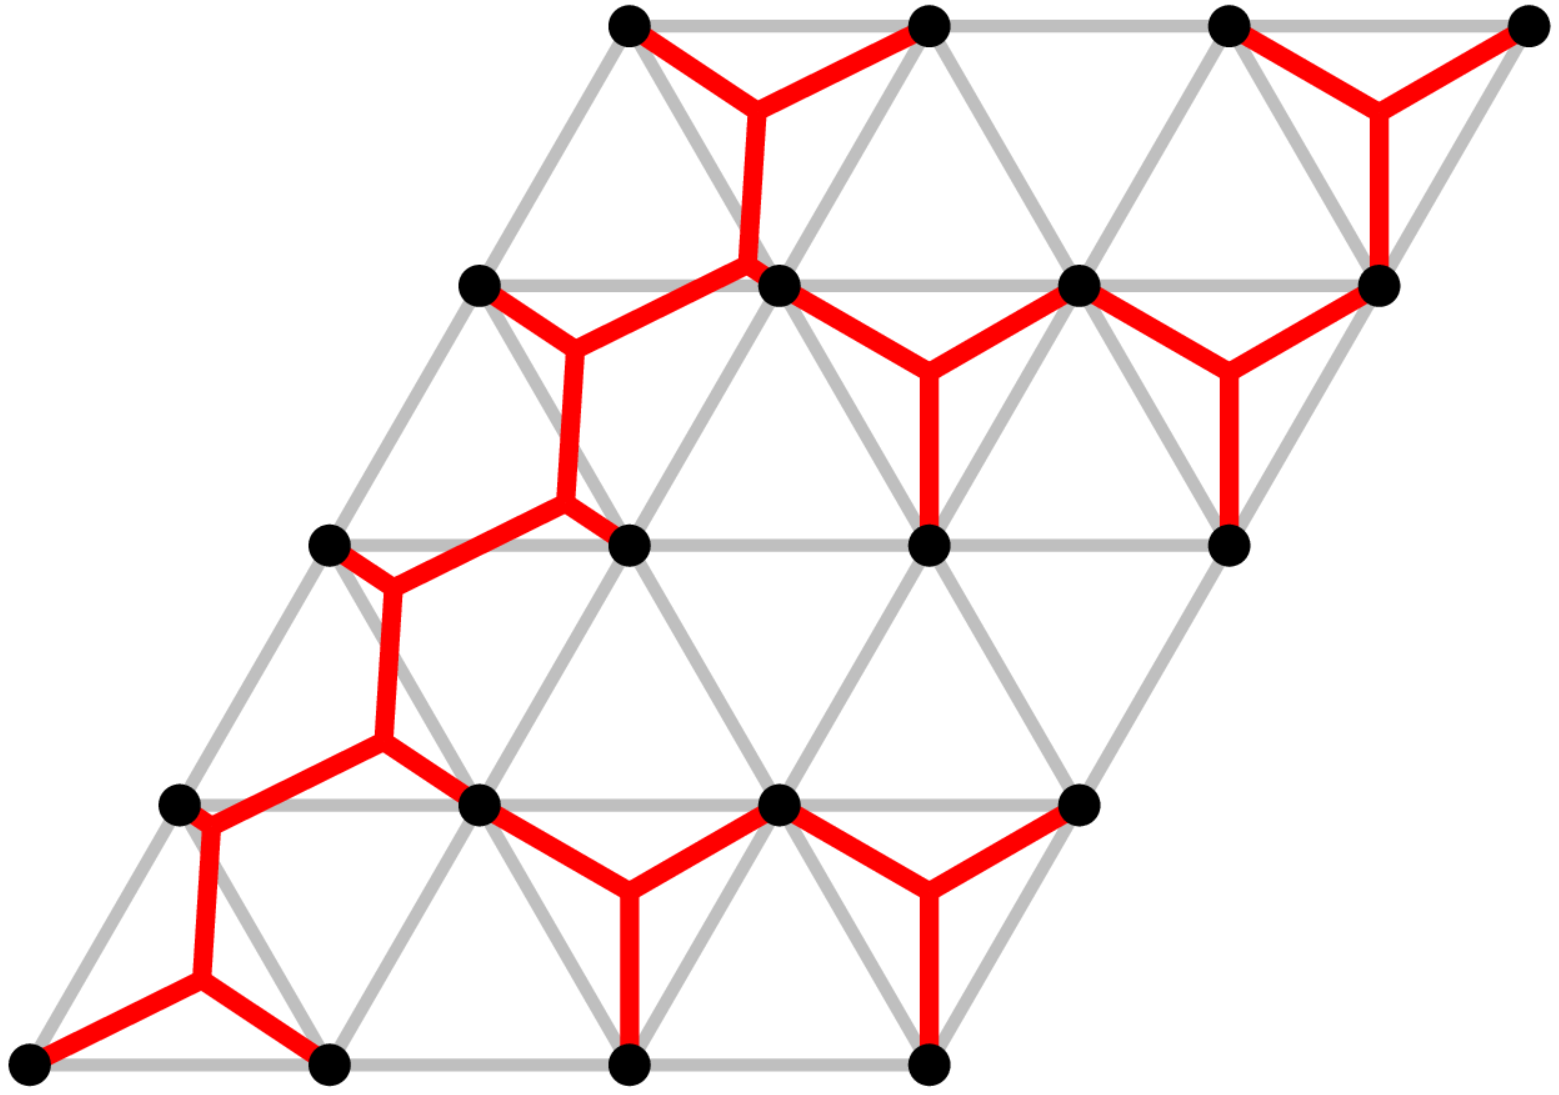 Triangular Grid Instances for the Euclidean Steine...